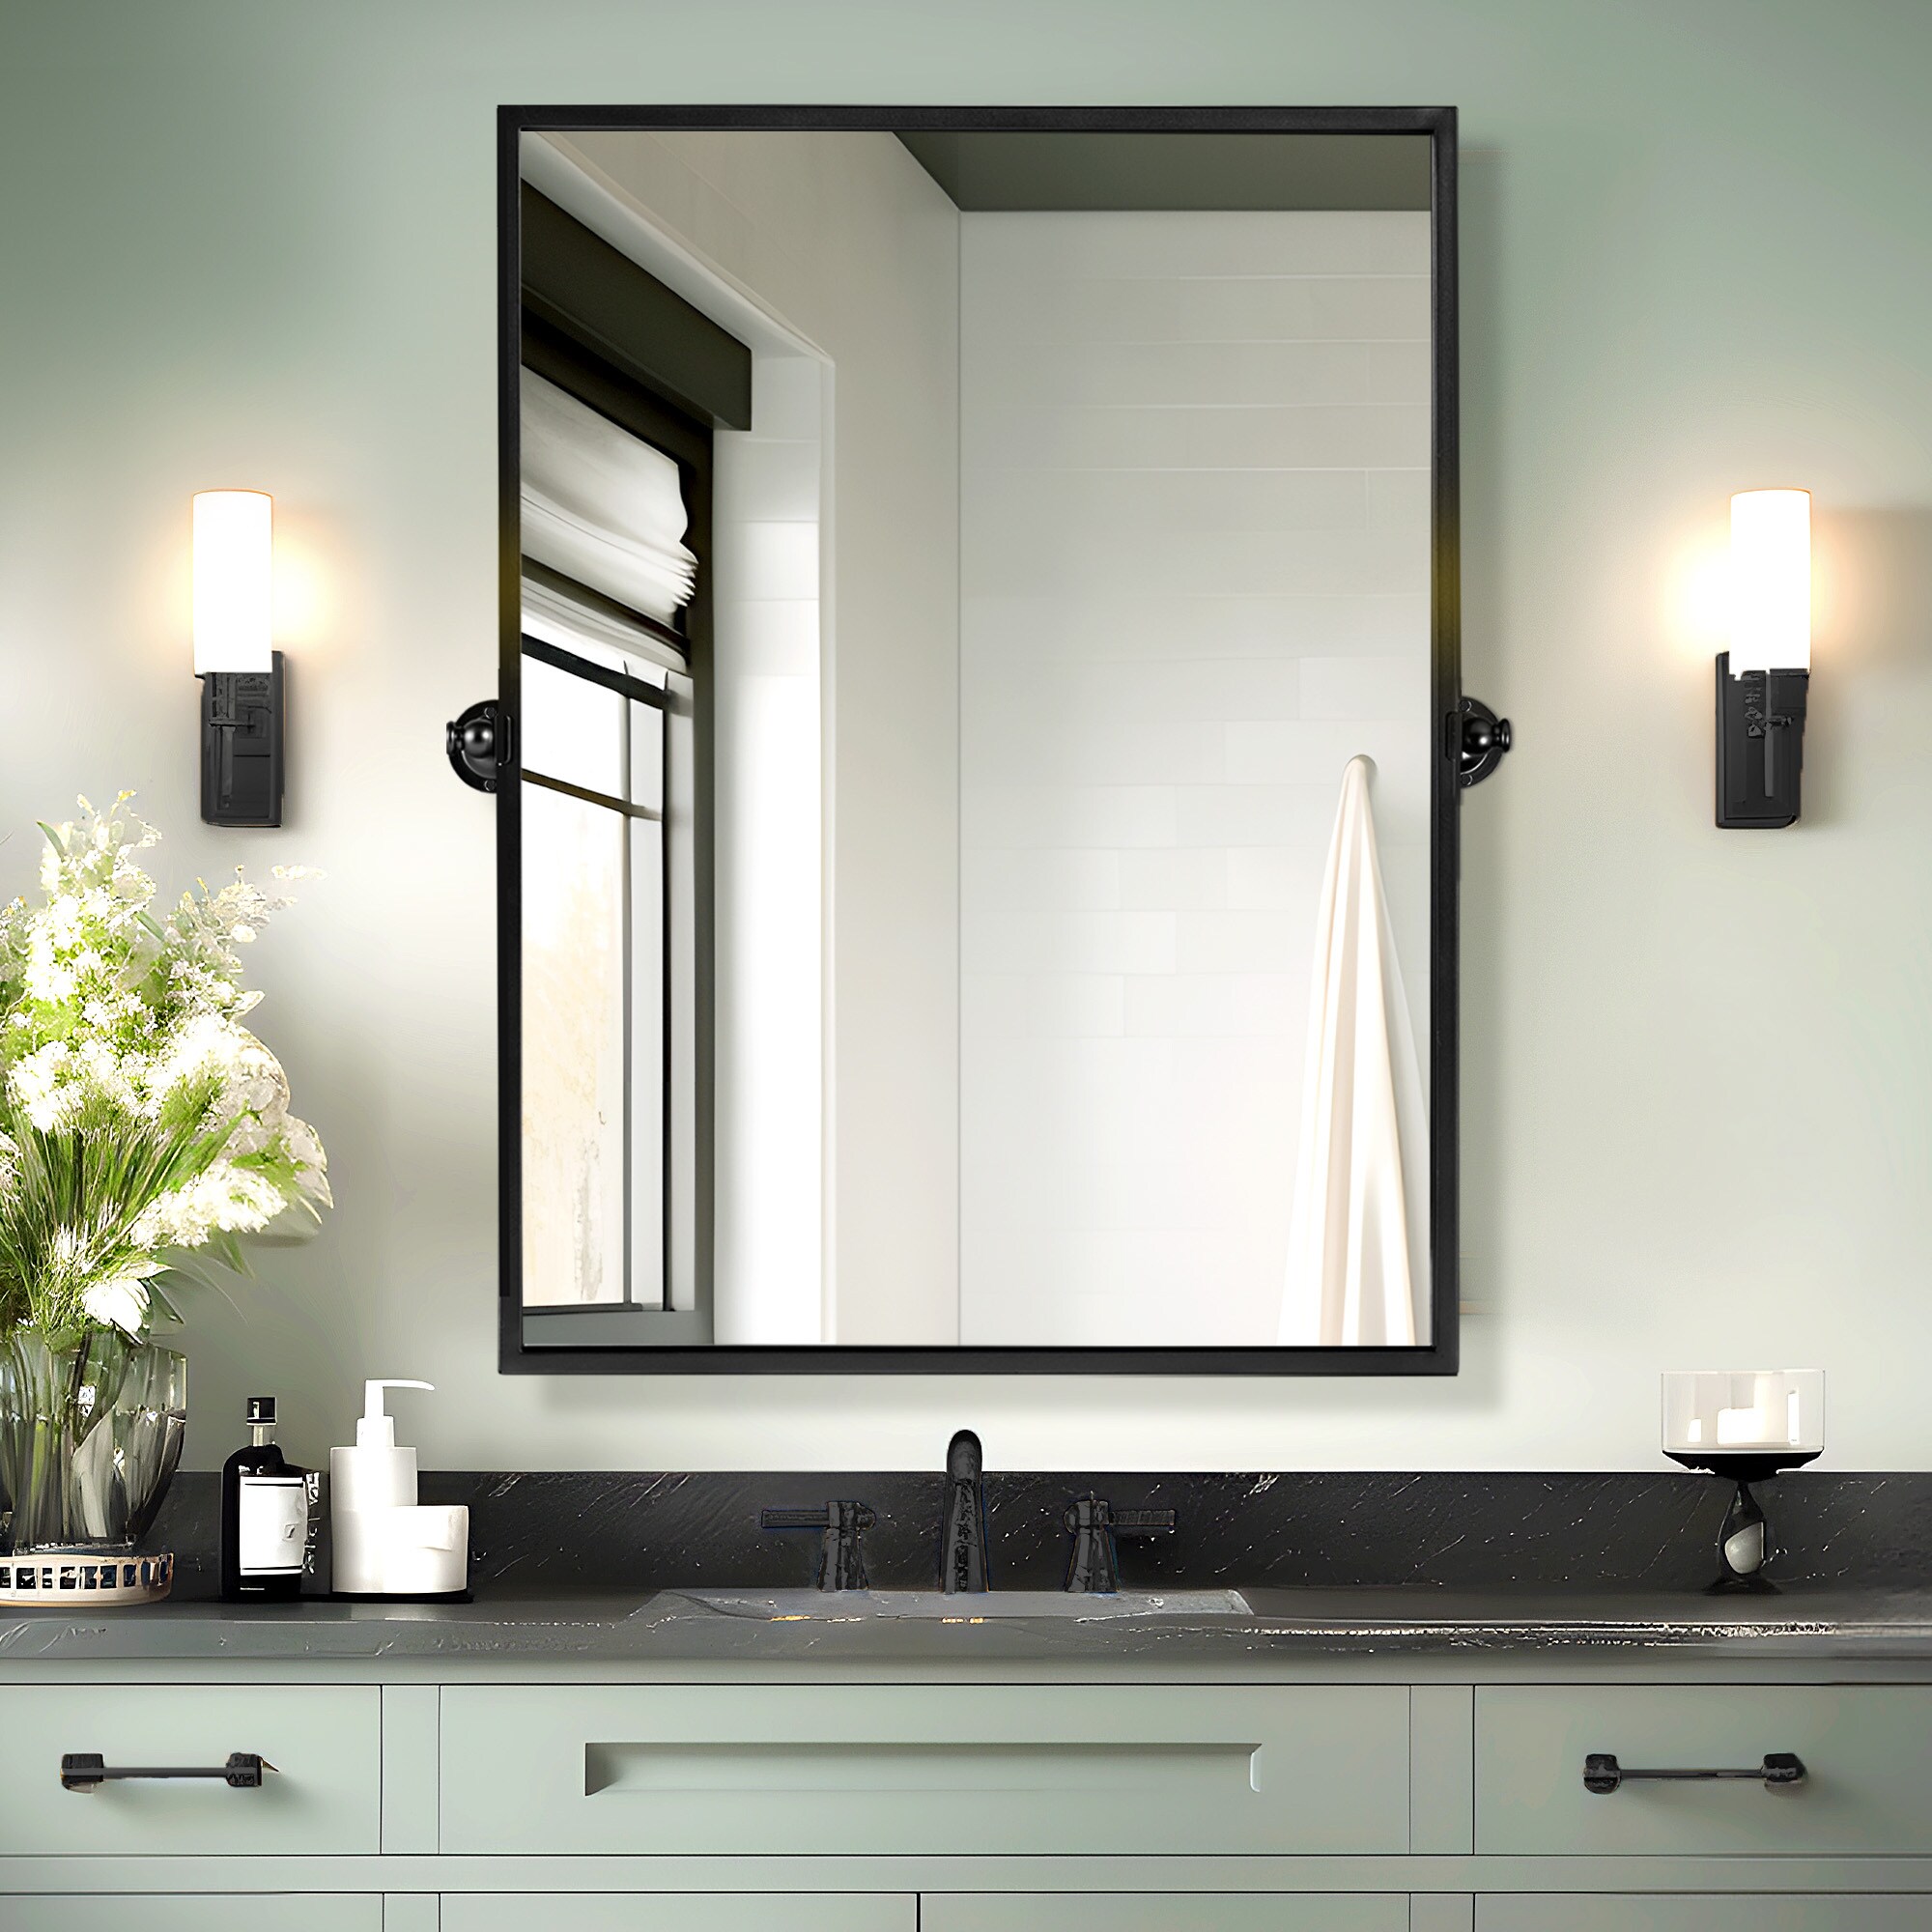 NeuType 24-in x 32-in Framed Bathroom Vanity Mirror (Black) in the ...